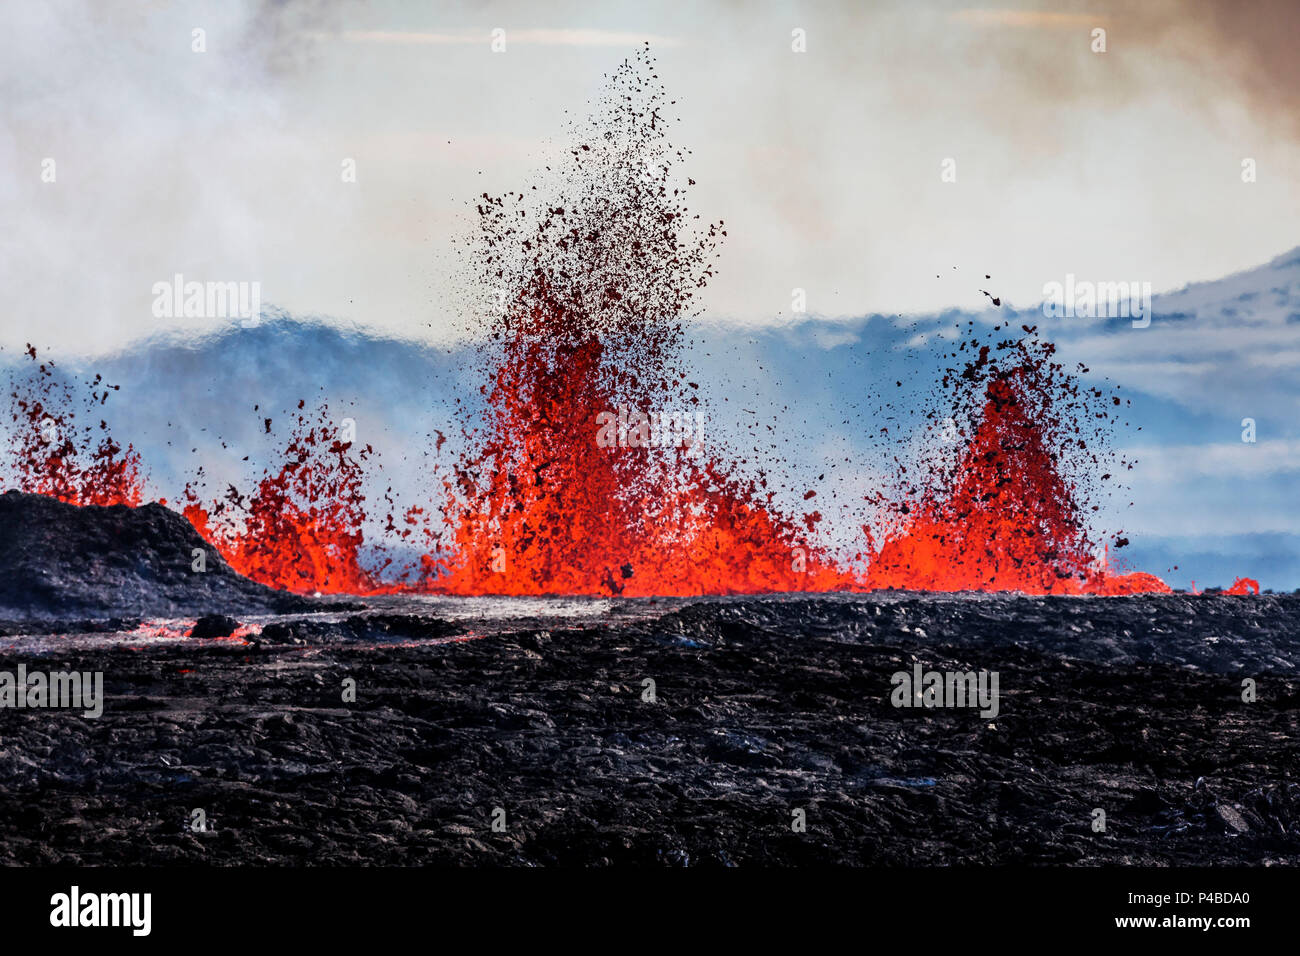 Vue aérienne de lave et de panaches. 29 août 2014, une éruption a débuté en Holuhraun fissure à l'extrémité nord d'une intrusion de magma, qui avait déplacé progressivement nord, du volcan Bardarbunga. Bardarbunga est un stratovolcan situé sous l'Islande Vatnajokull, glacier le plus vaste. Photo Date : 3 Septembre, 2014 personnes debout par Flosagja fissure, le Parc National de Thingvellir, Islande Banque D'Images